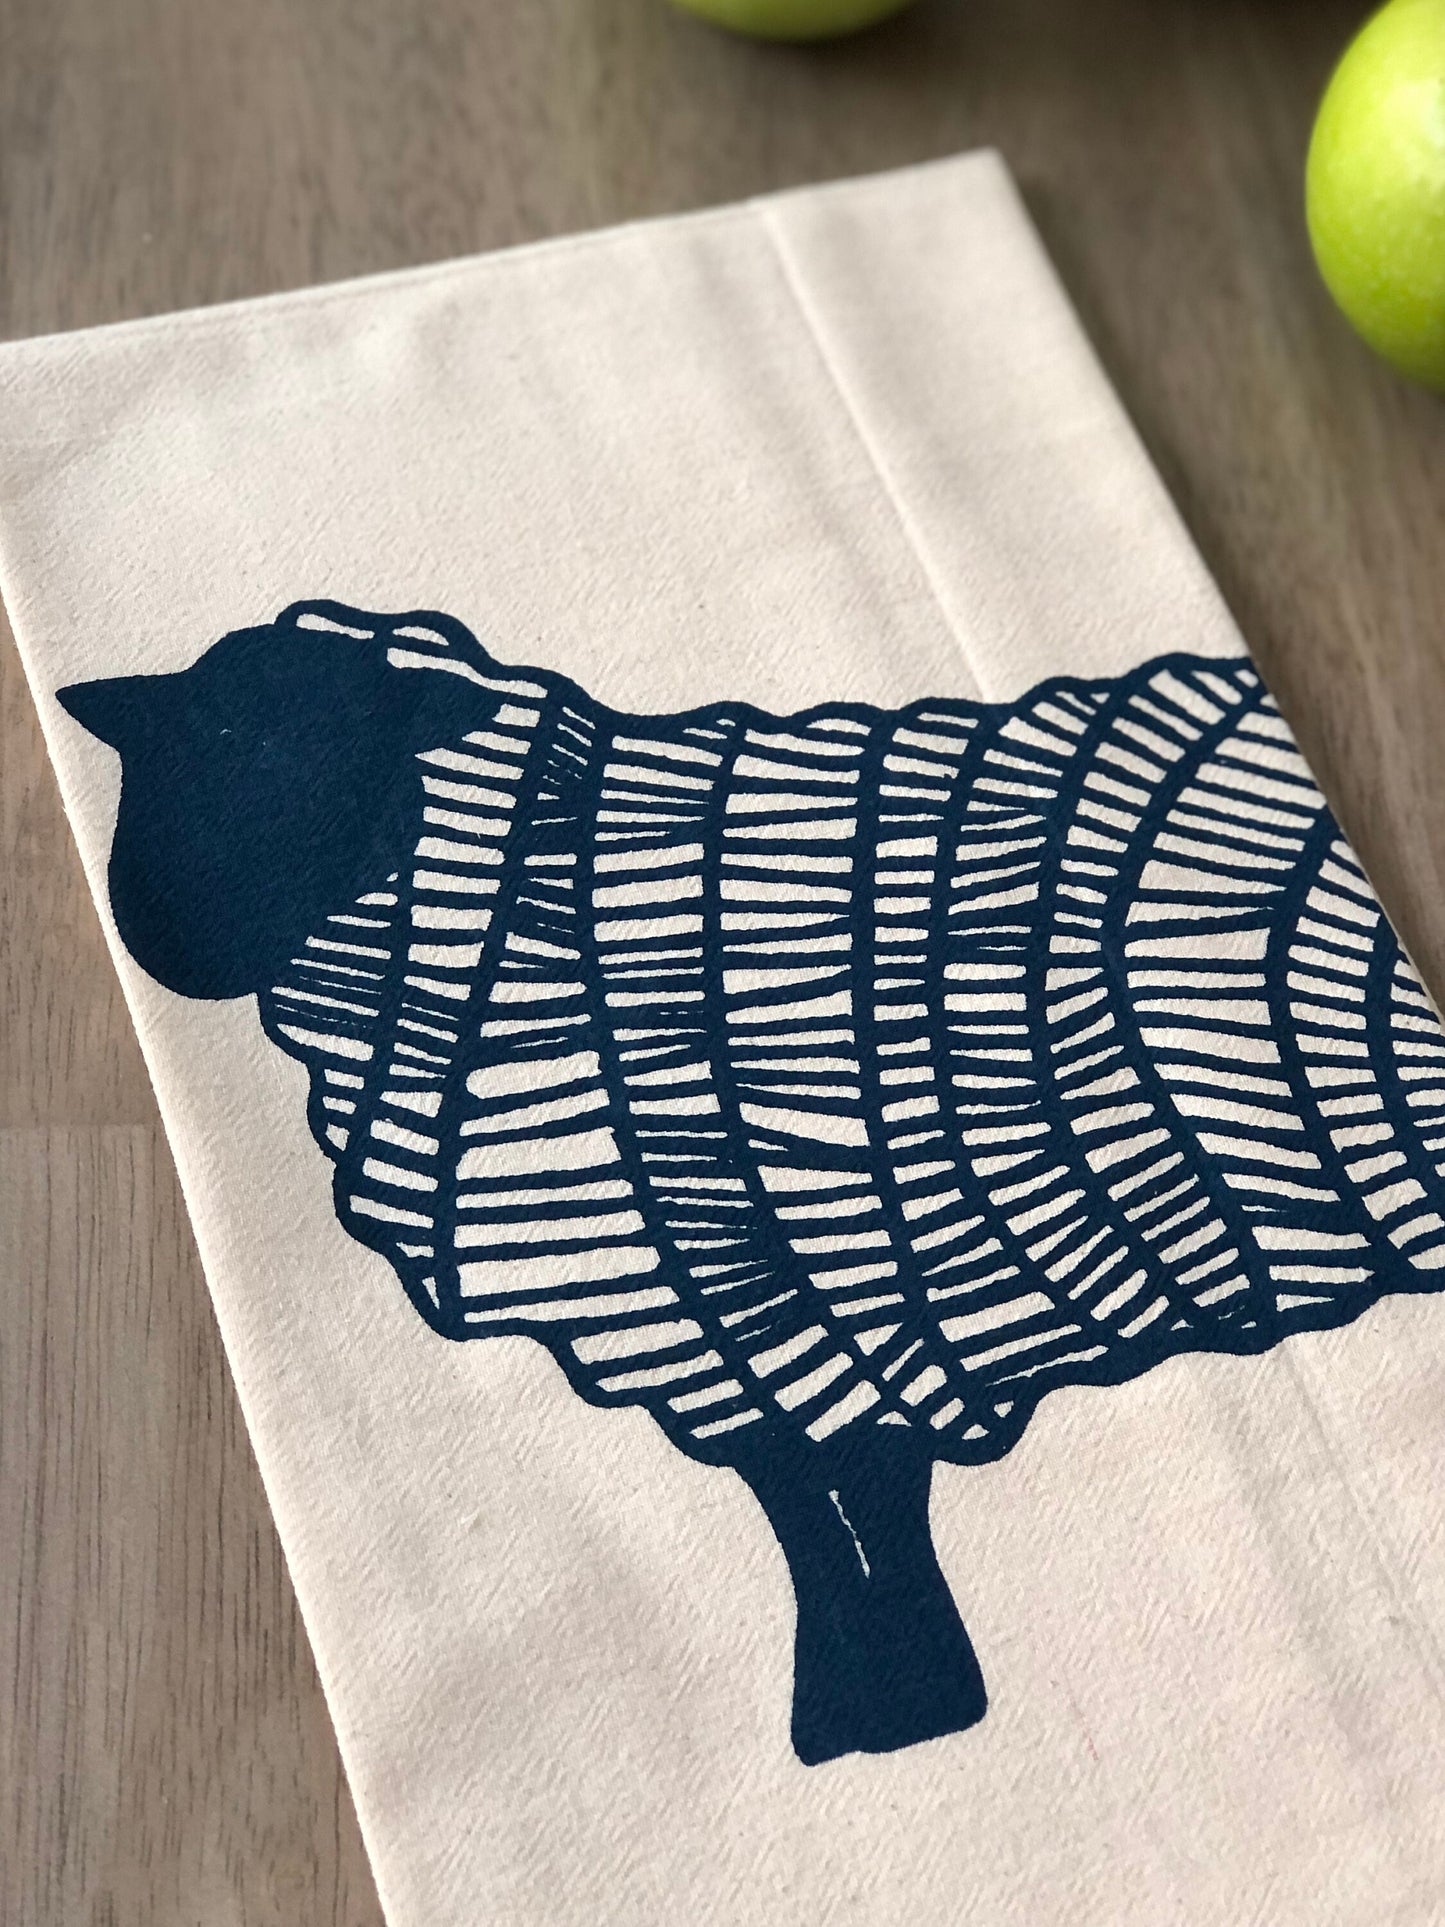 Sheep flour sack tea towel